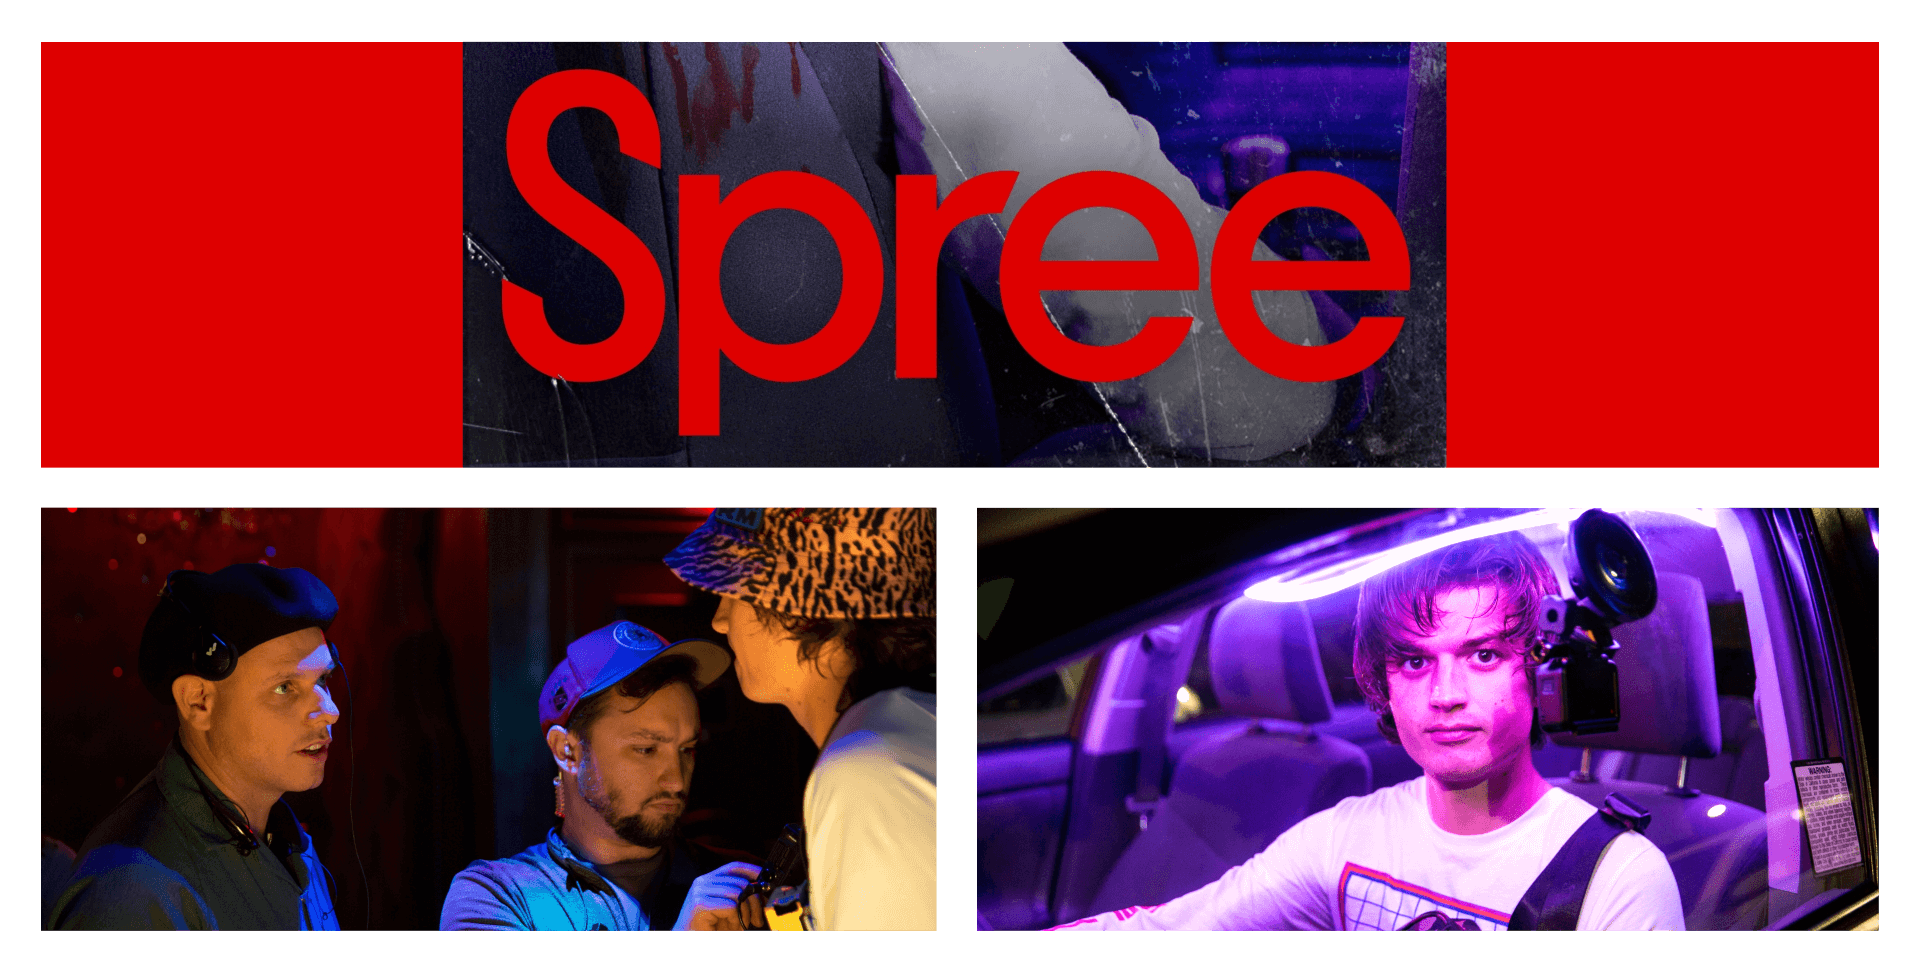 Interview with 'Spree' director Eugene Kotlyarenko